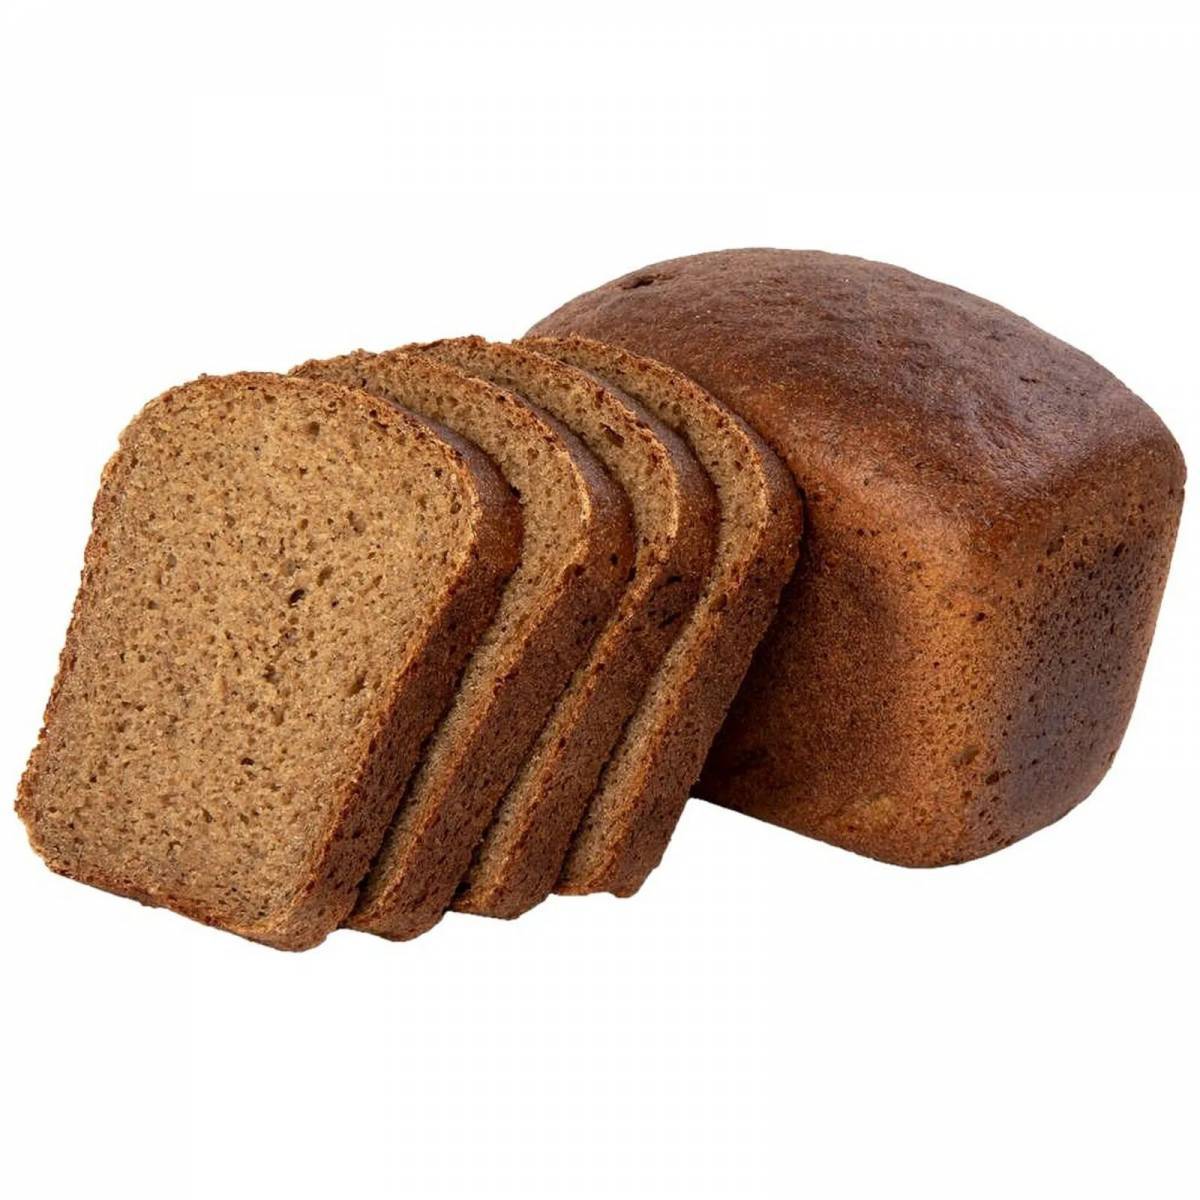 Хлеб для детей #20